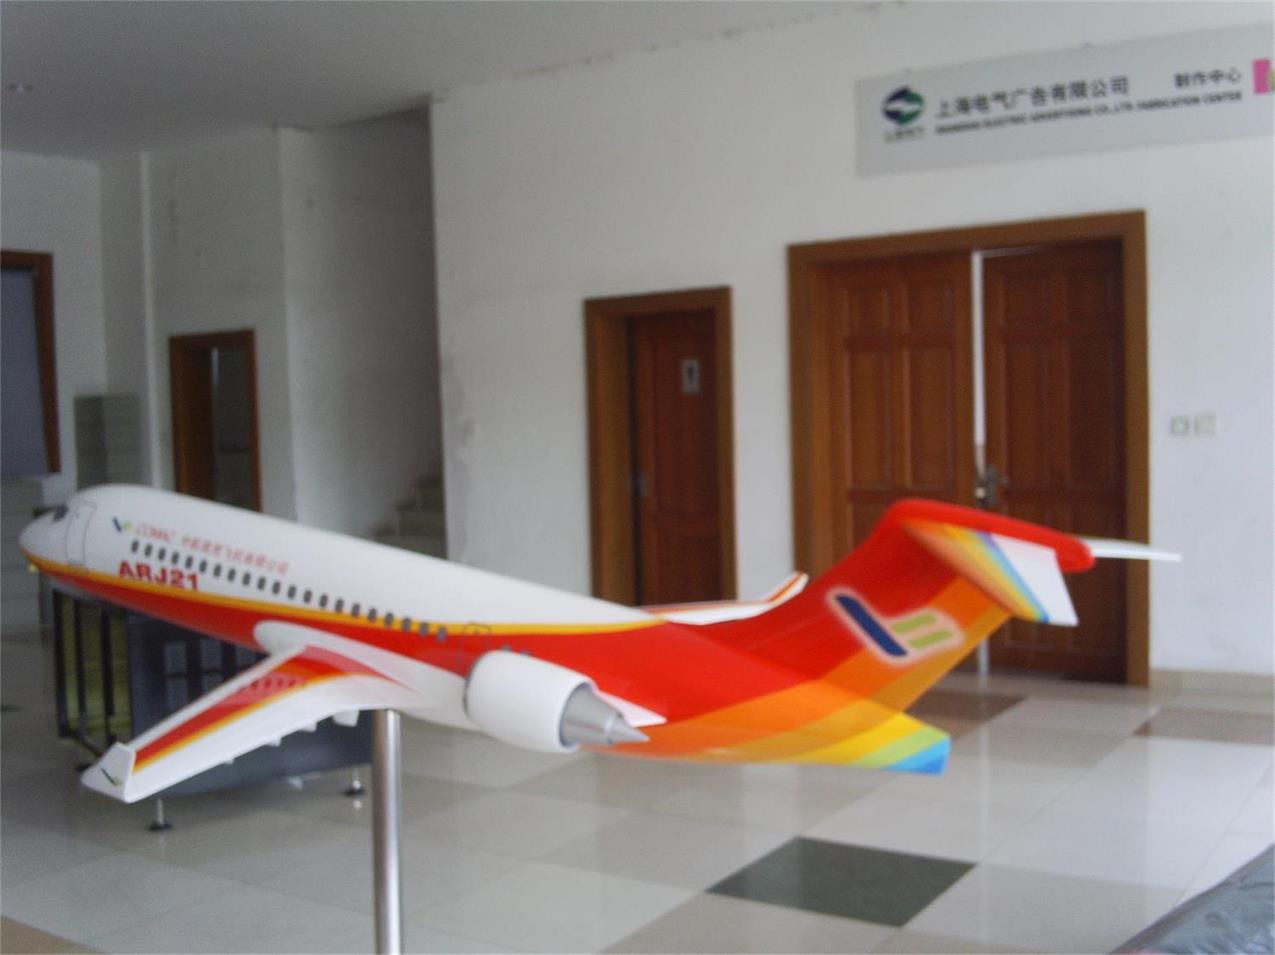 桃江县航天航空模型